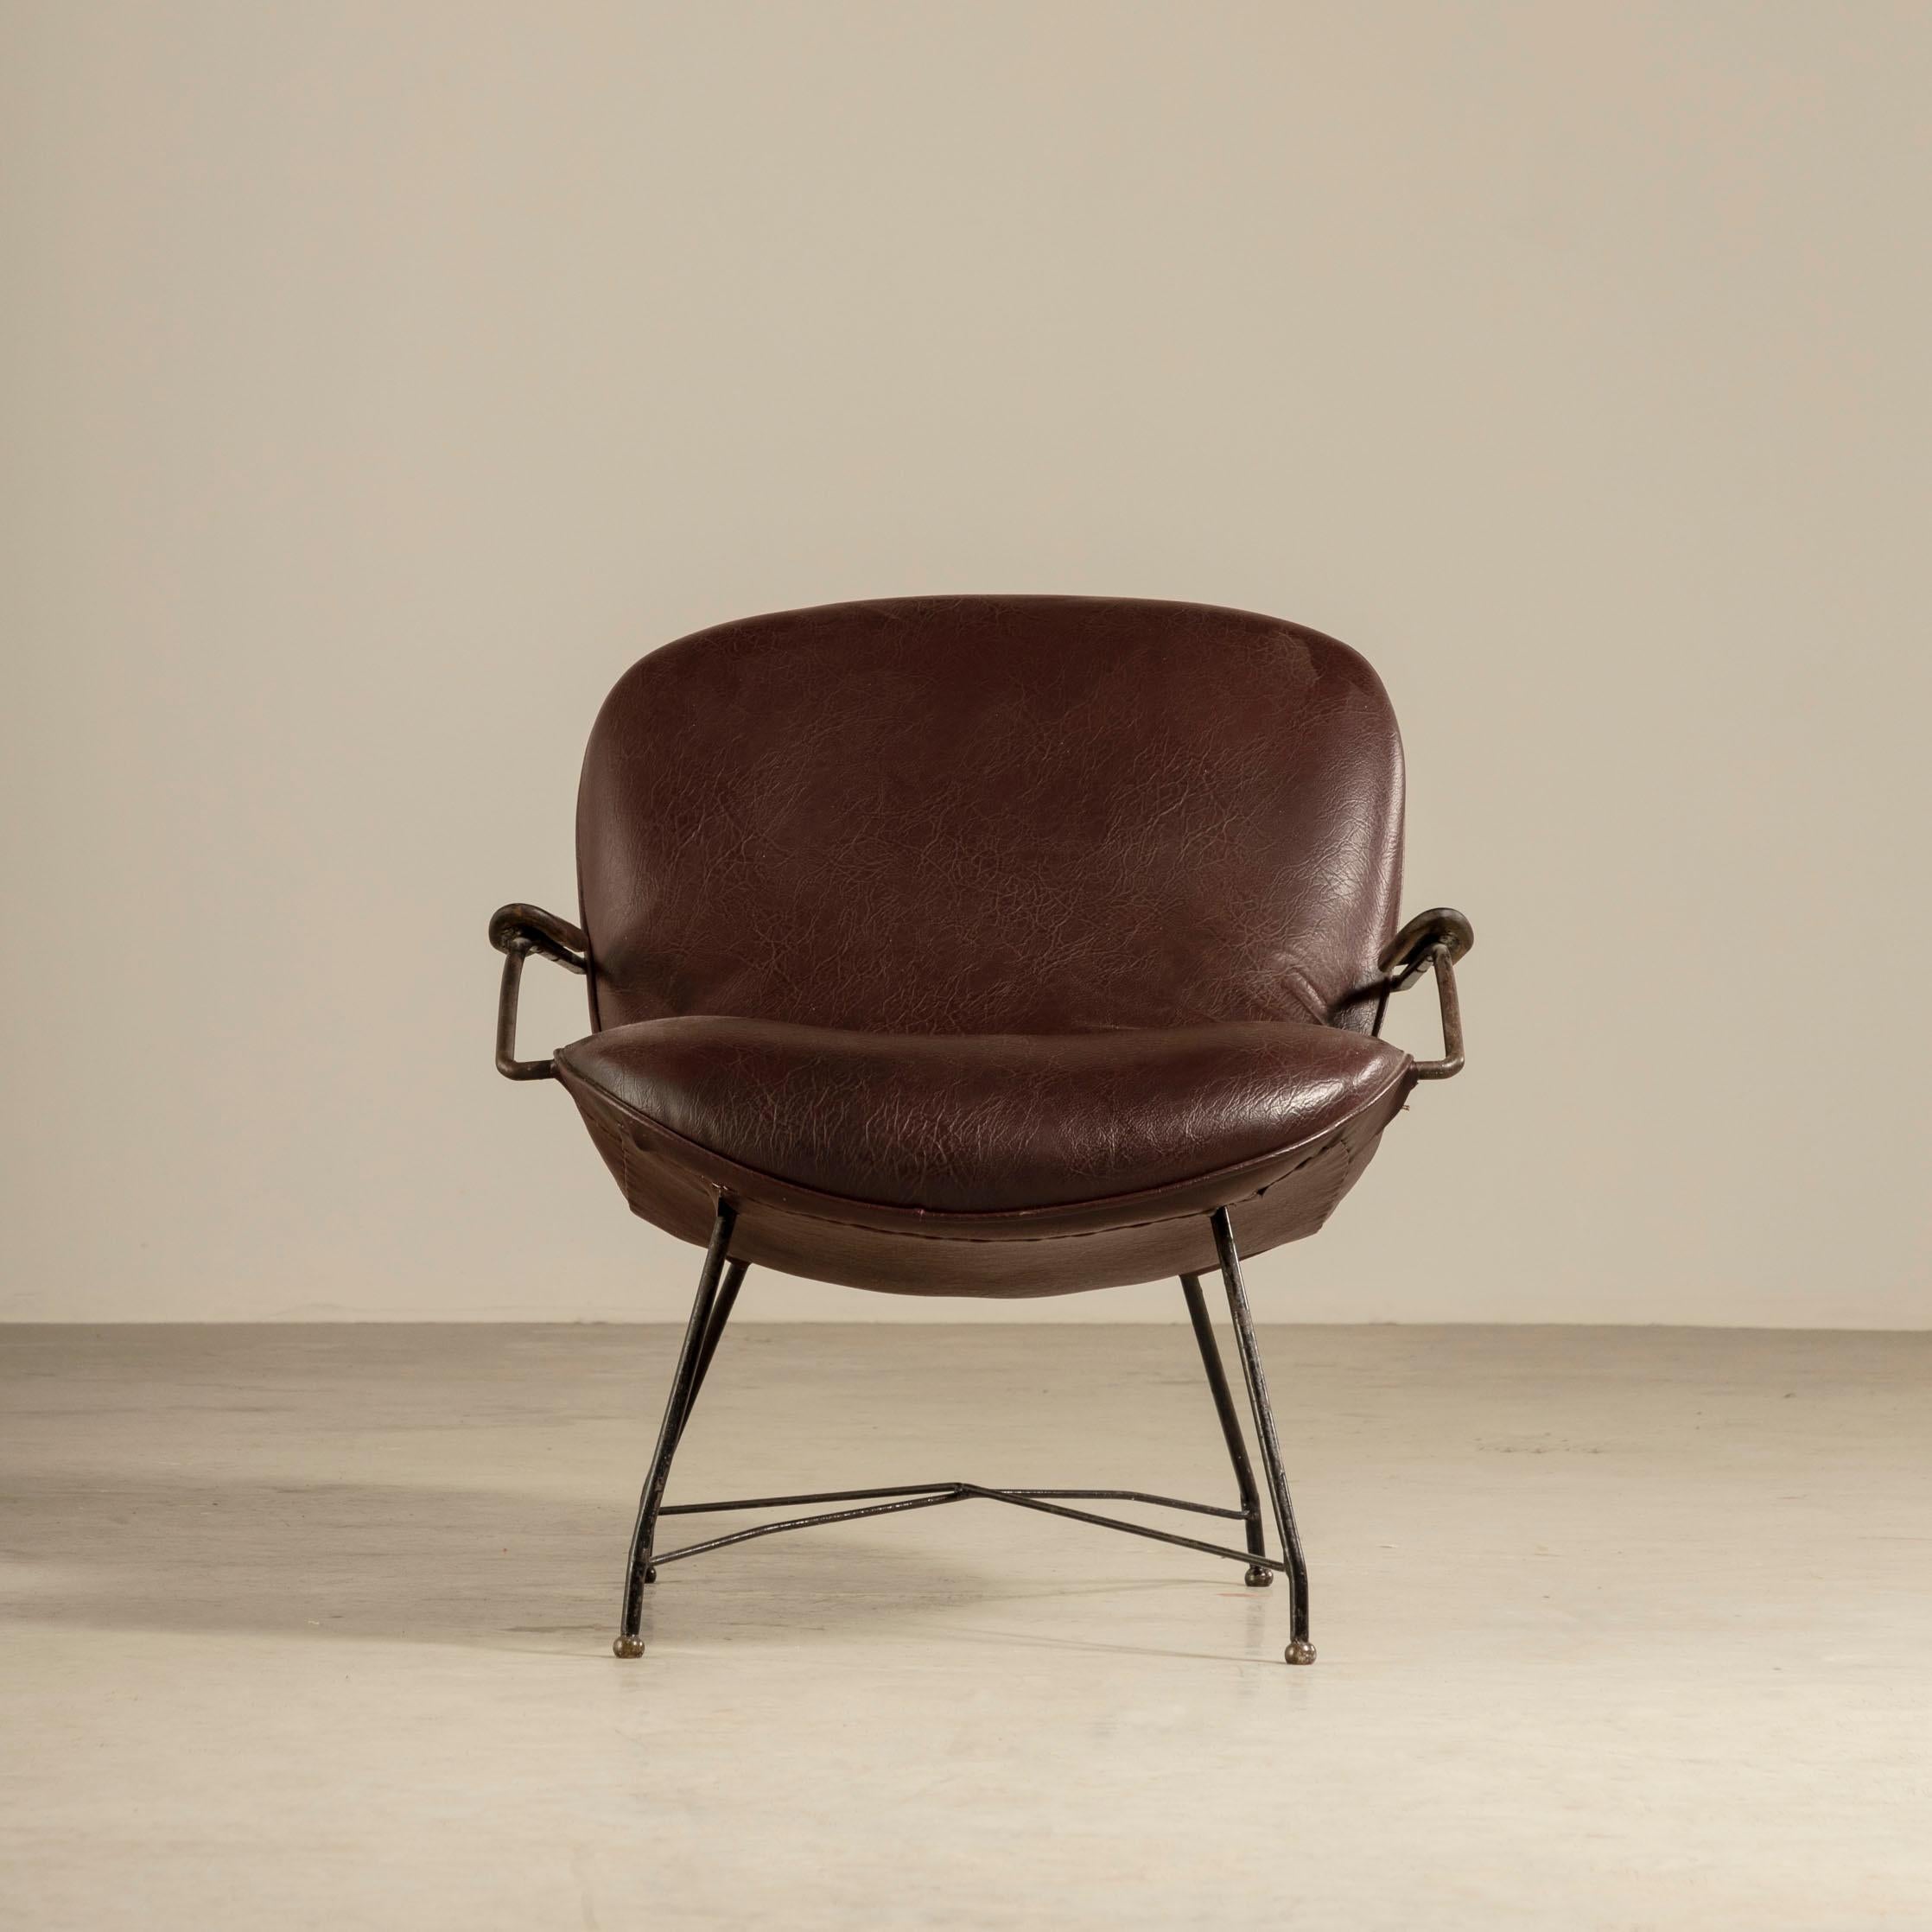 Cette étonnante paire de fauteuils, conçue par Martin Eisler & Carlo Hauner au Brésil dans les années 1960, est un parfait exemple du style moderne du milieu du siècle. Avec leurs lignes épurées et leur forme minimaliste, ces chaises dégagent une